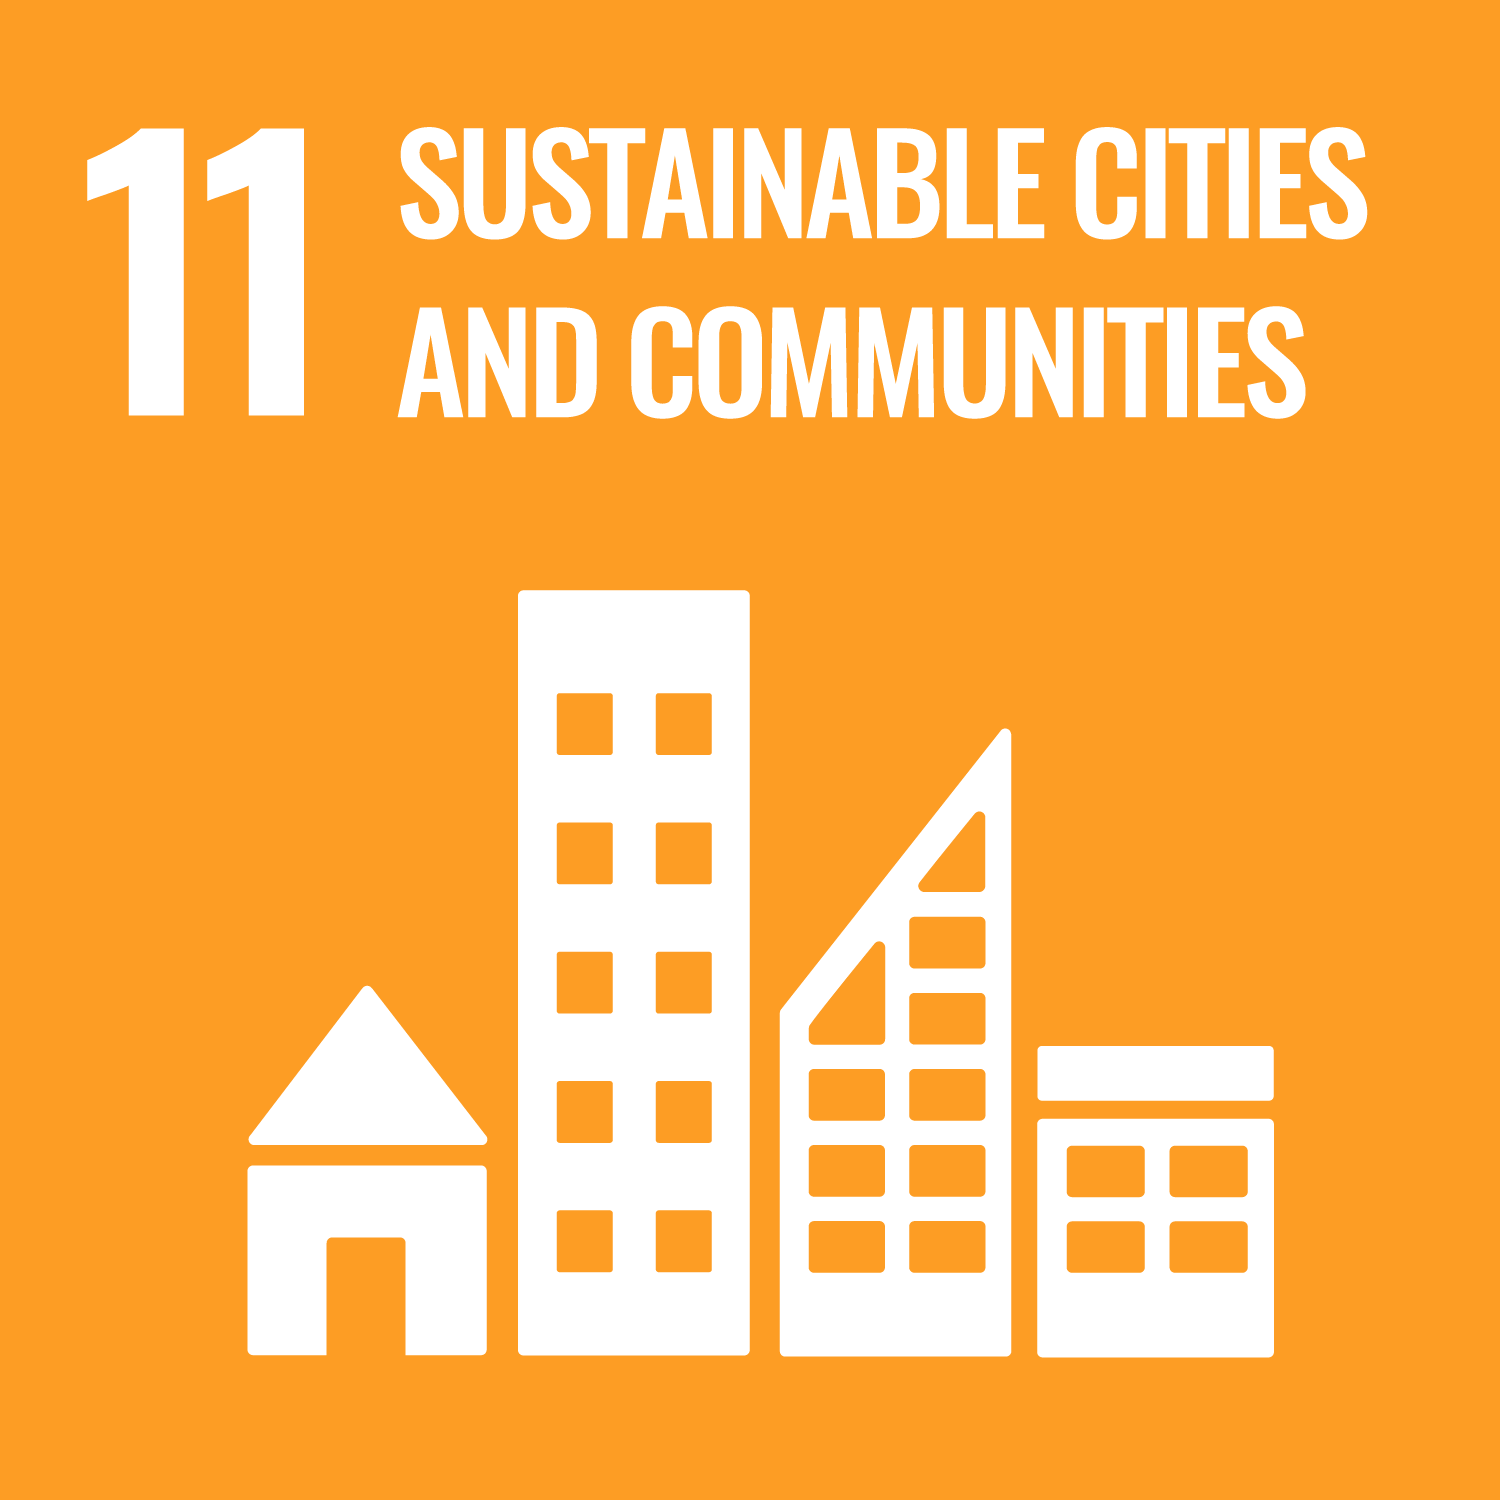 11. Održivi gradovi i zajednice